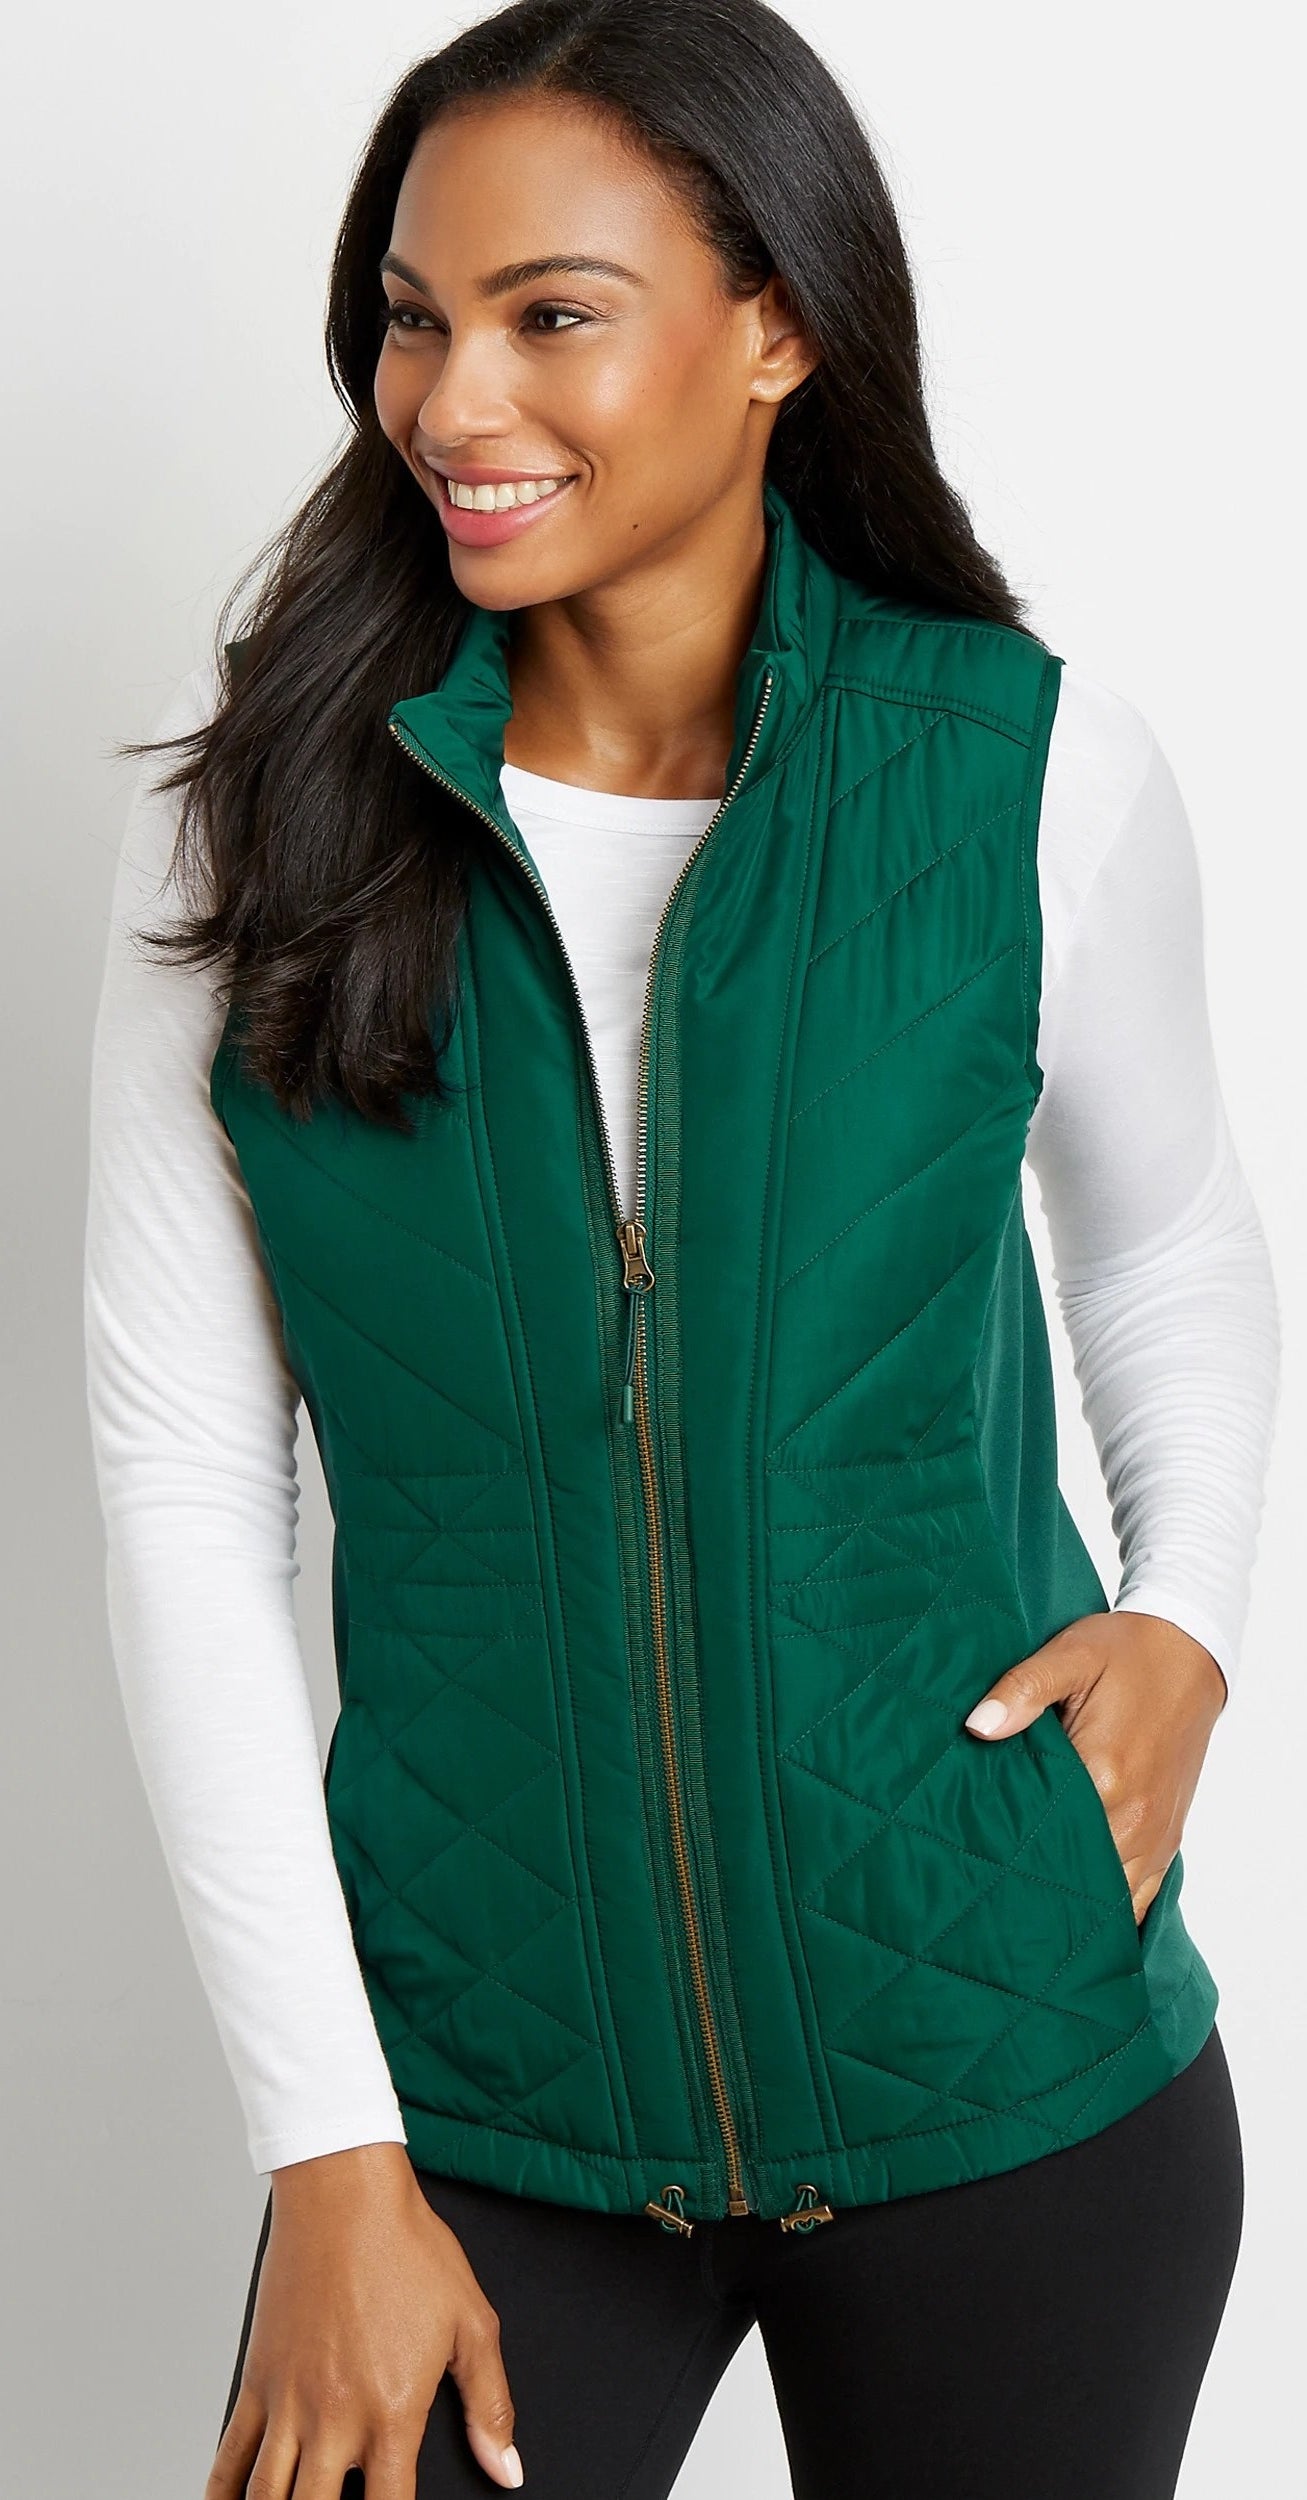 Model wearing green vest